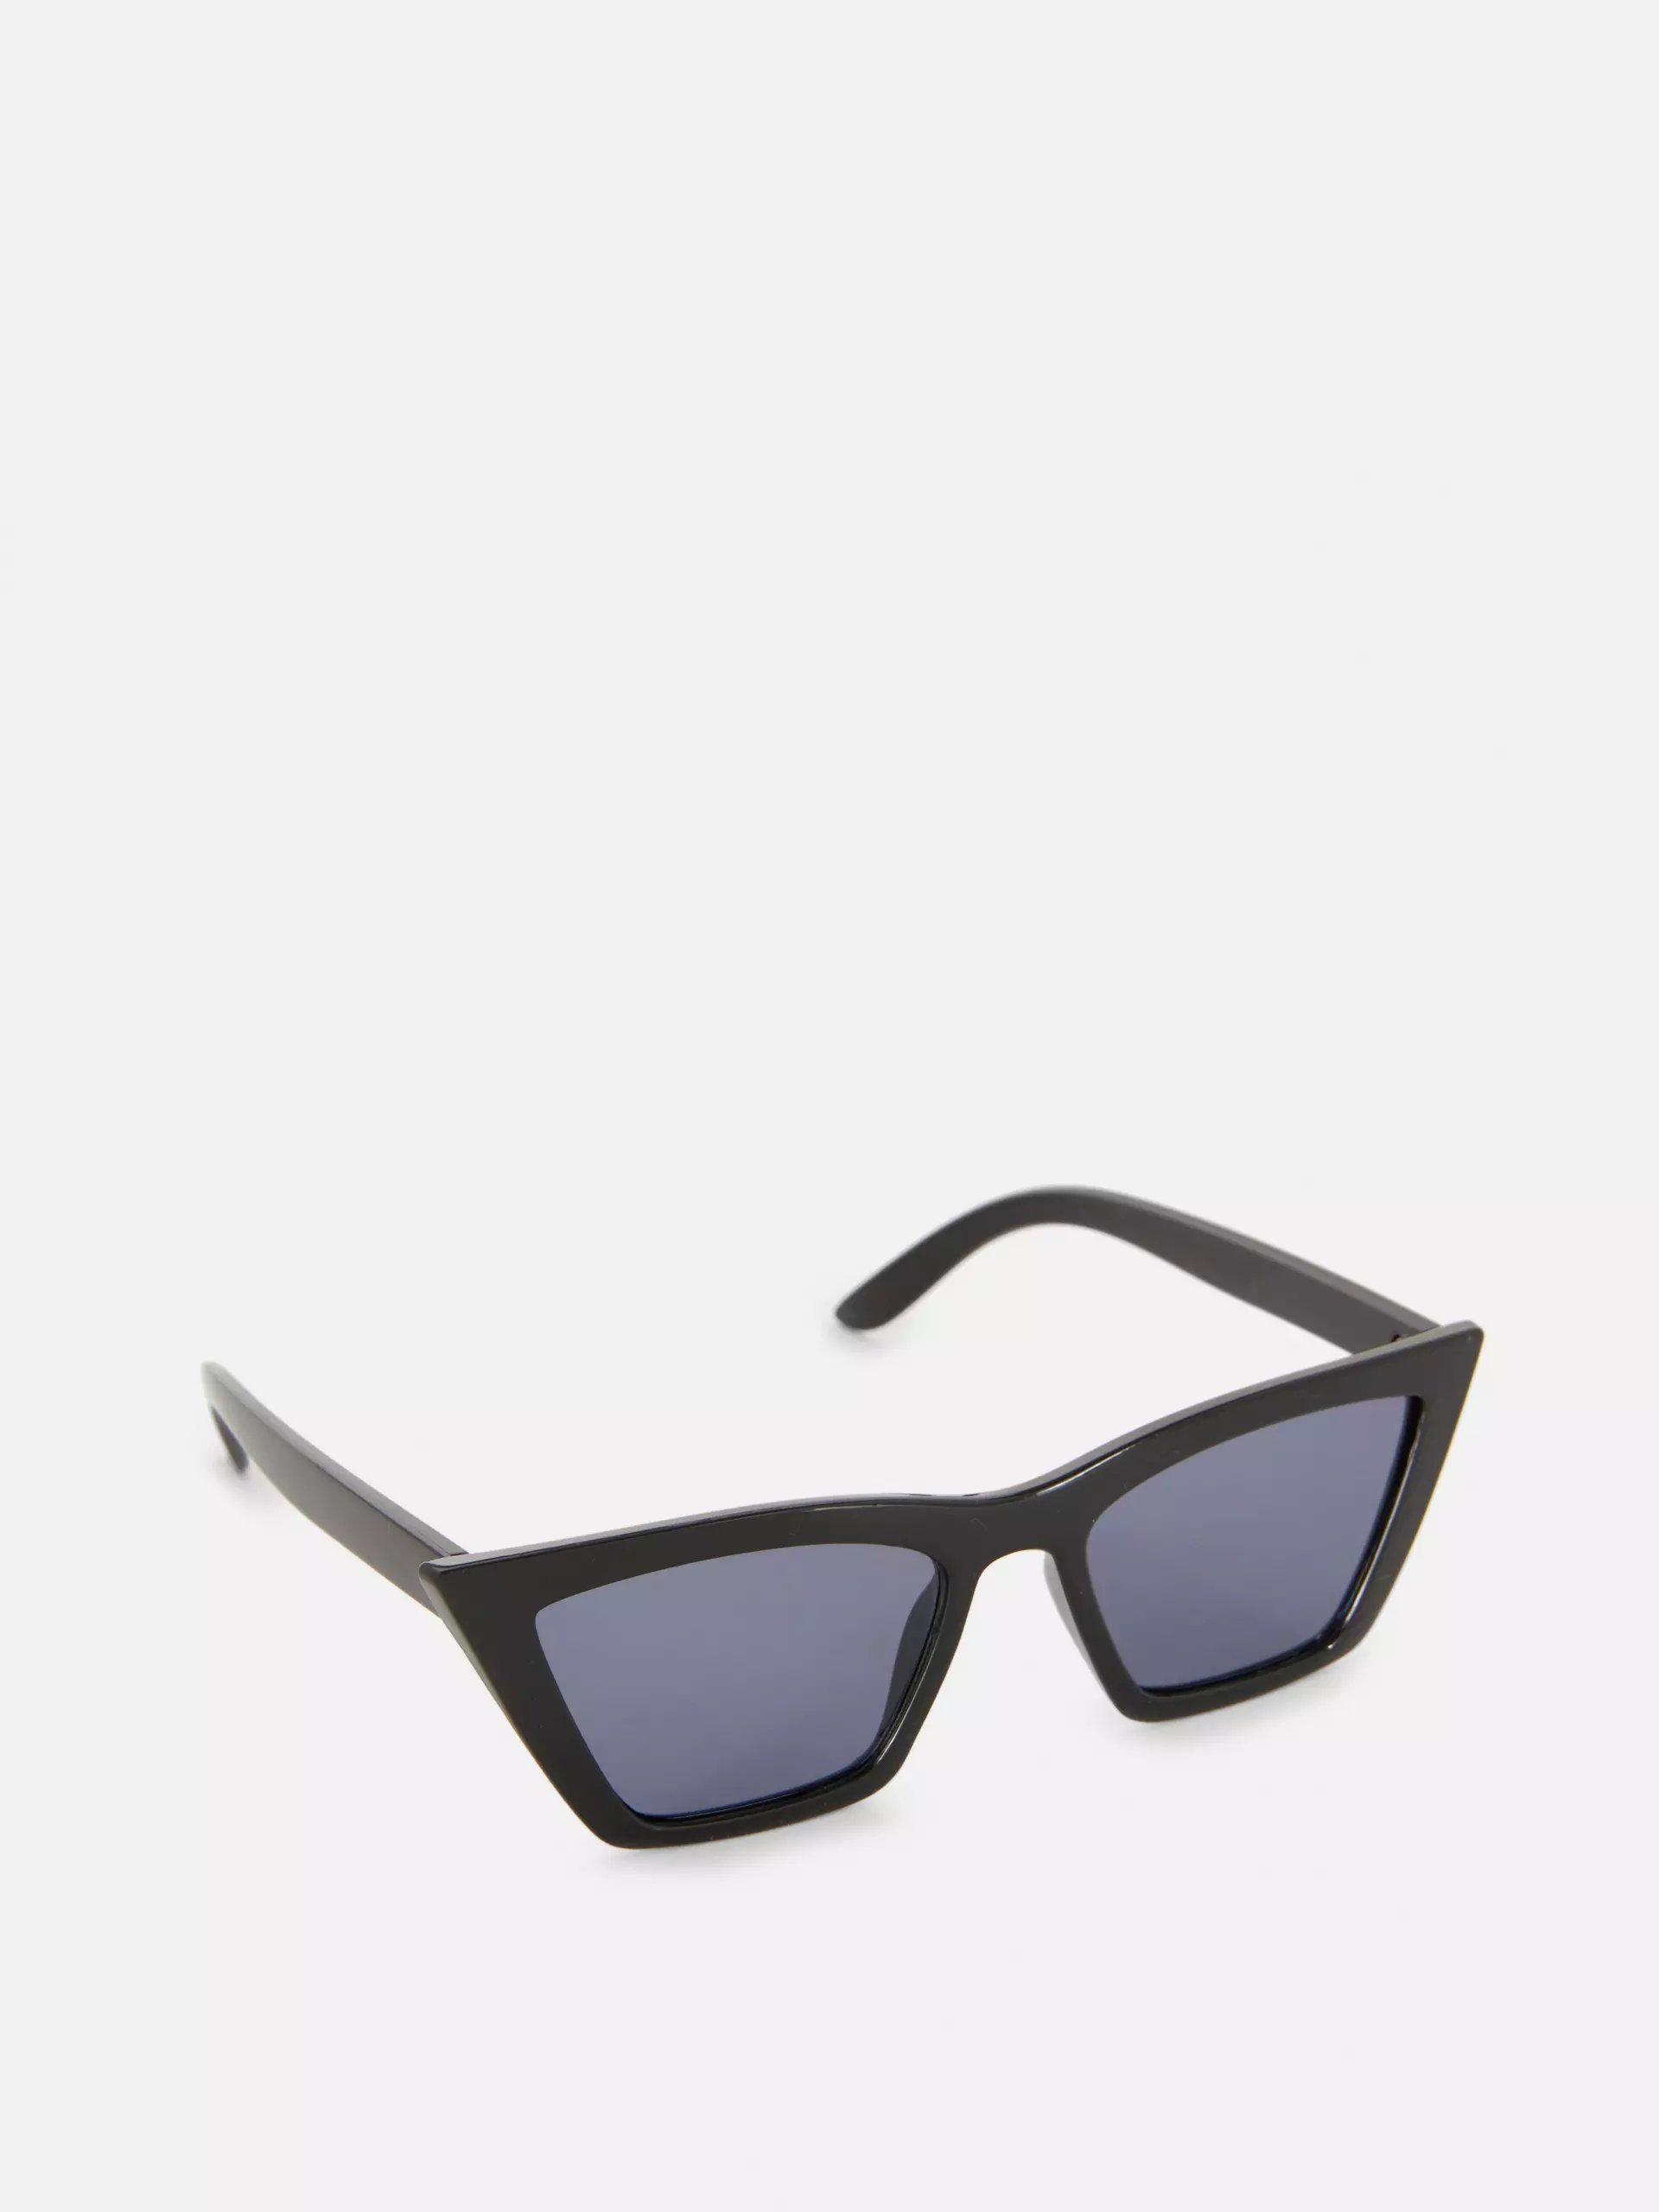 Las gafas de sol de Primark no tienen ningún logotipo escrito en las lentes.